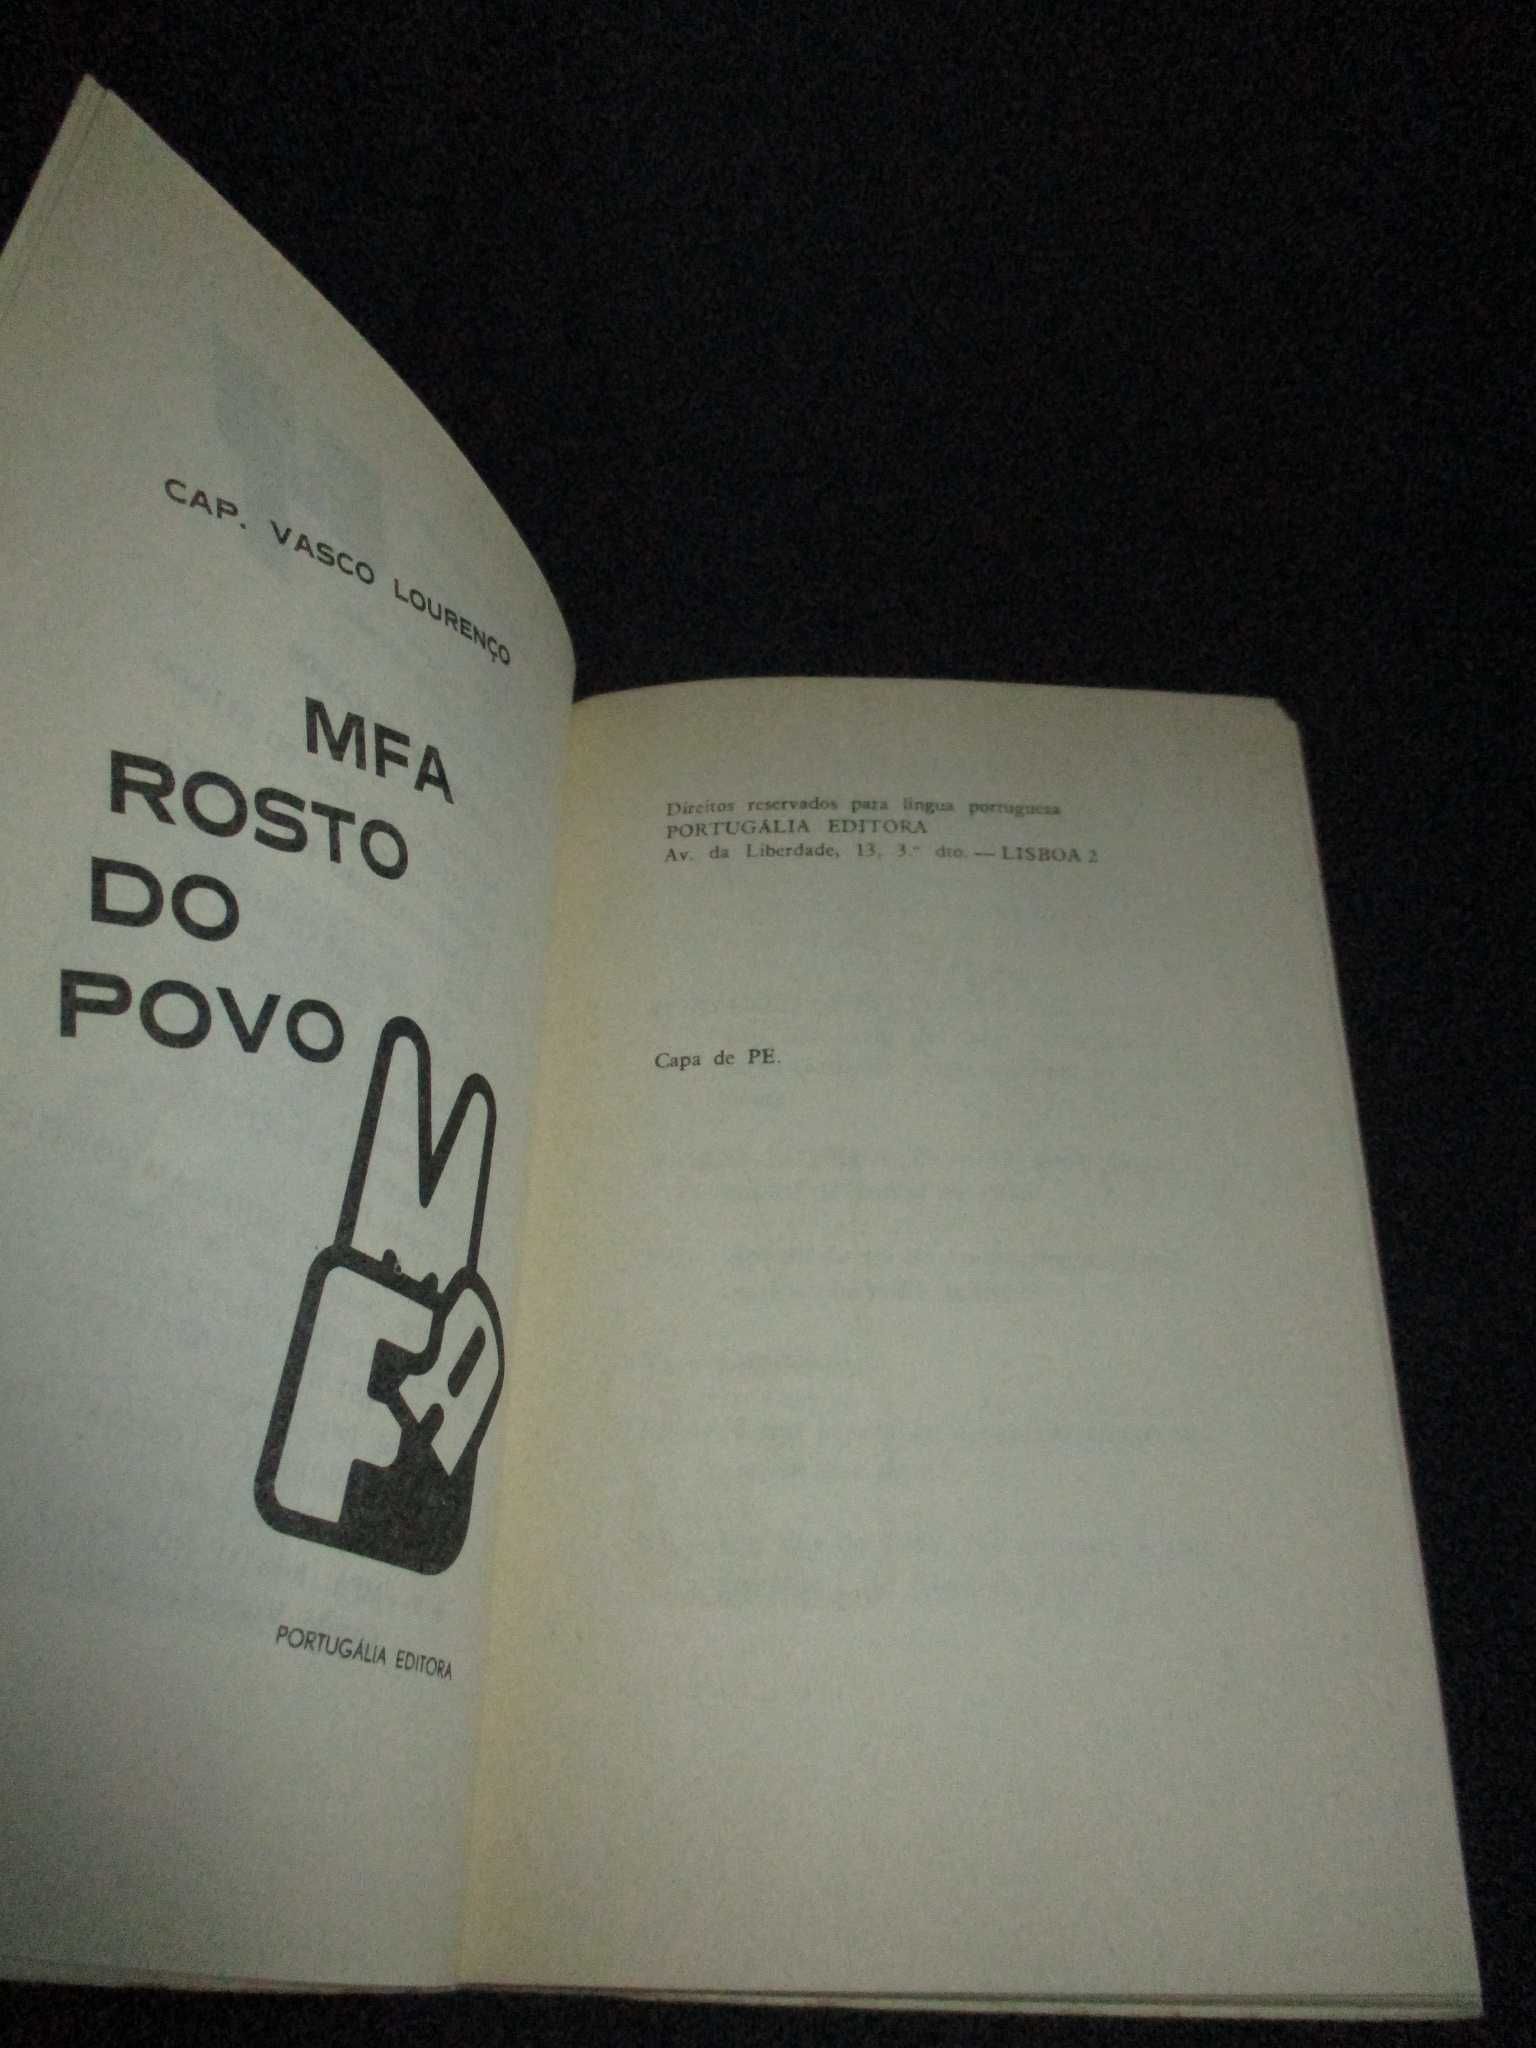 Livro MFA Rosto do Povo Cap. Vasco Lourenço